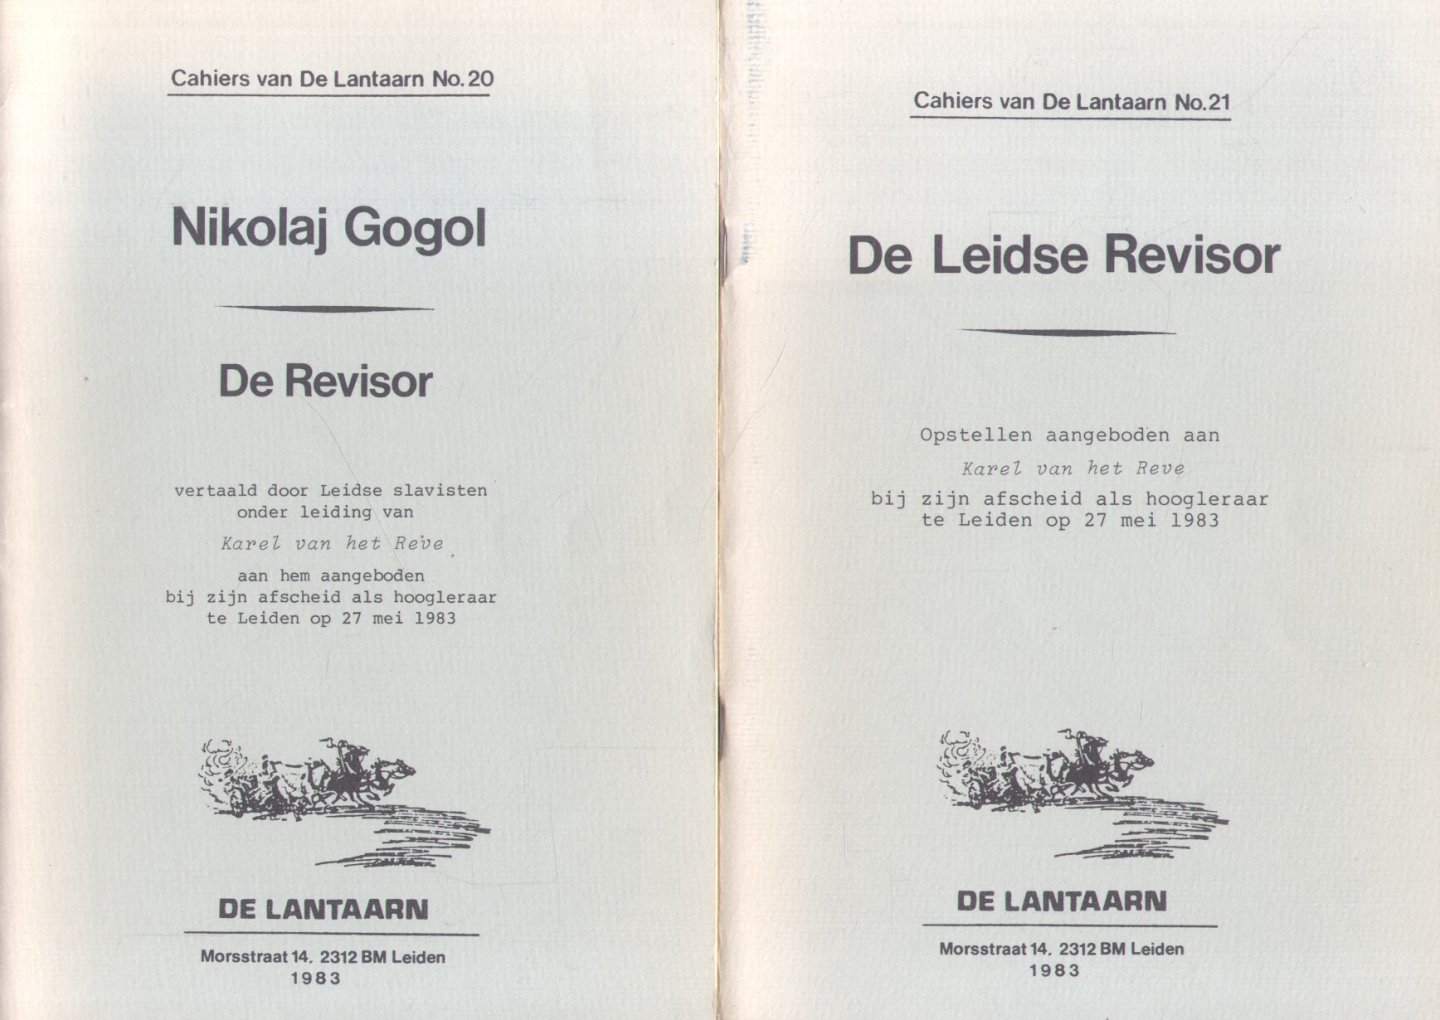 Cahiers van De Lantaarn No. 20 en No.21 - De Revisor (vertaald door Leidse slavisten) + De Leidse Revisor (opstellen). Aangeboden aan Karel van het Reve bij zijn afscheid als hoogleraar te Leiden op 27 mei 1983.